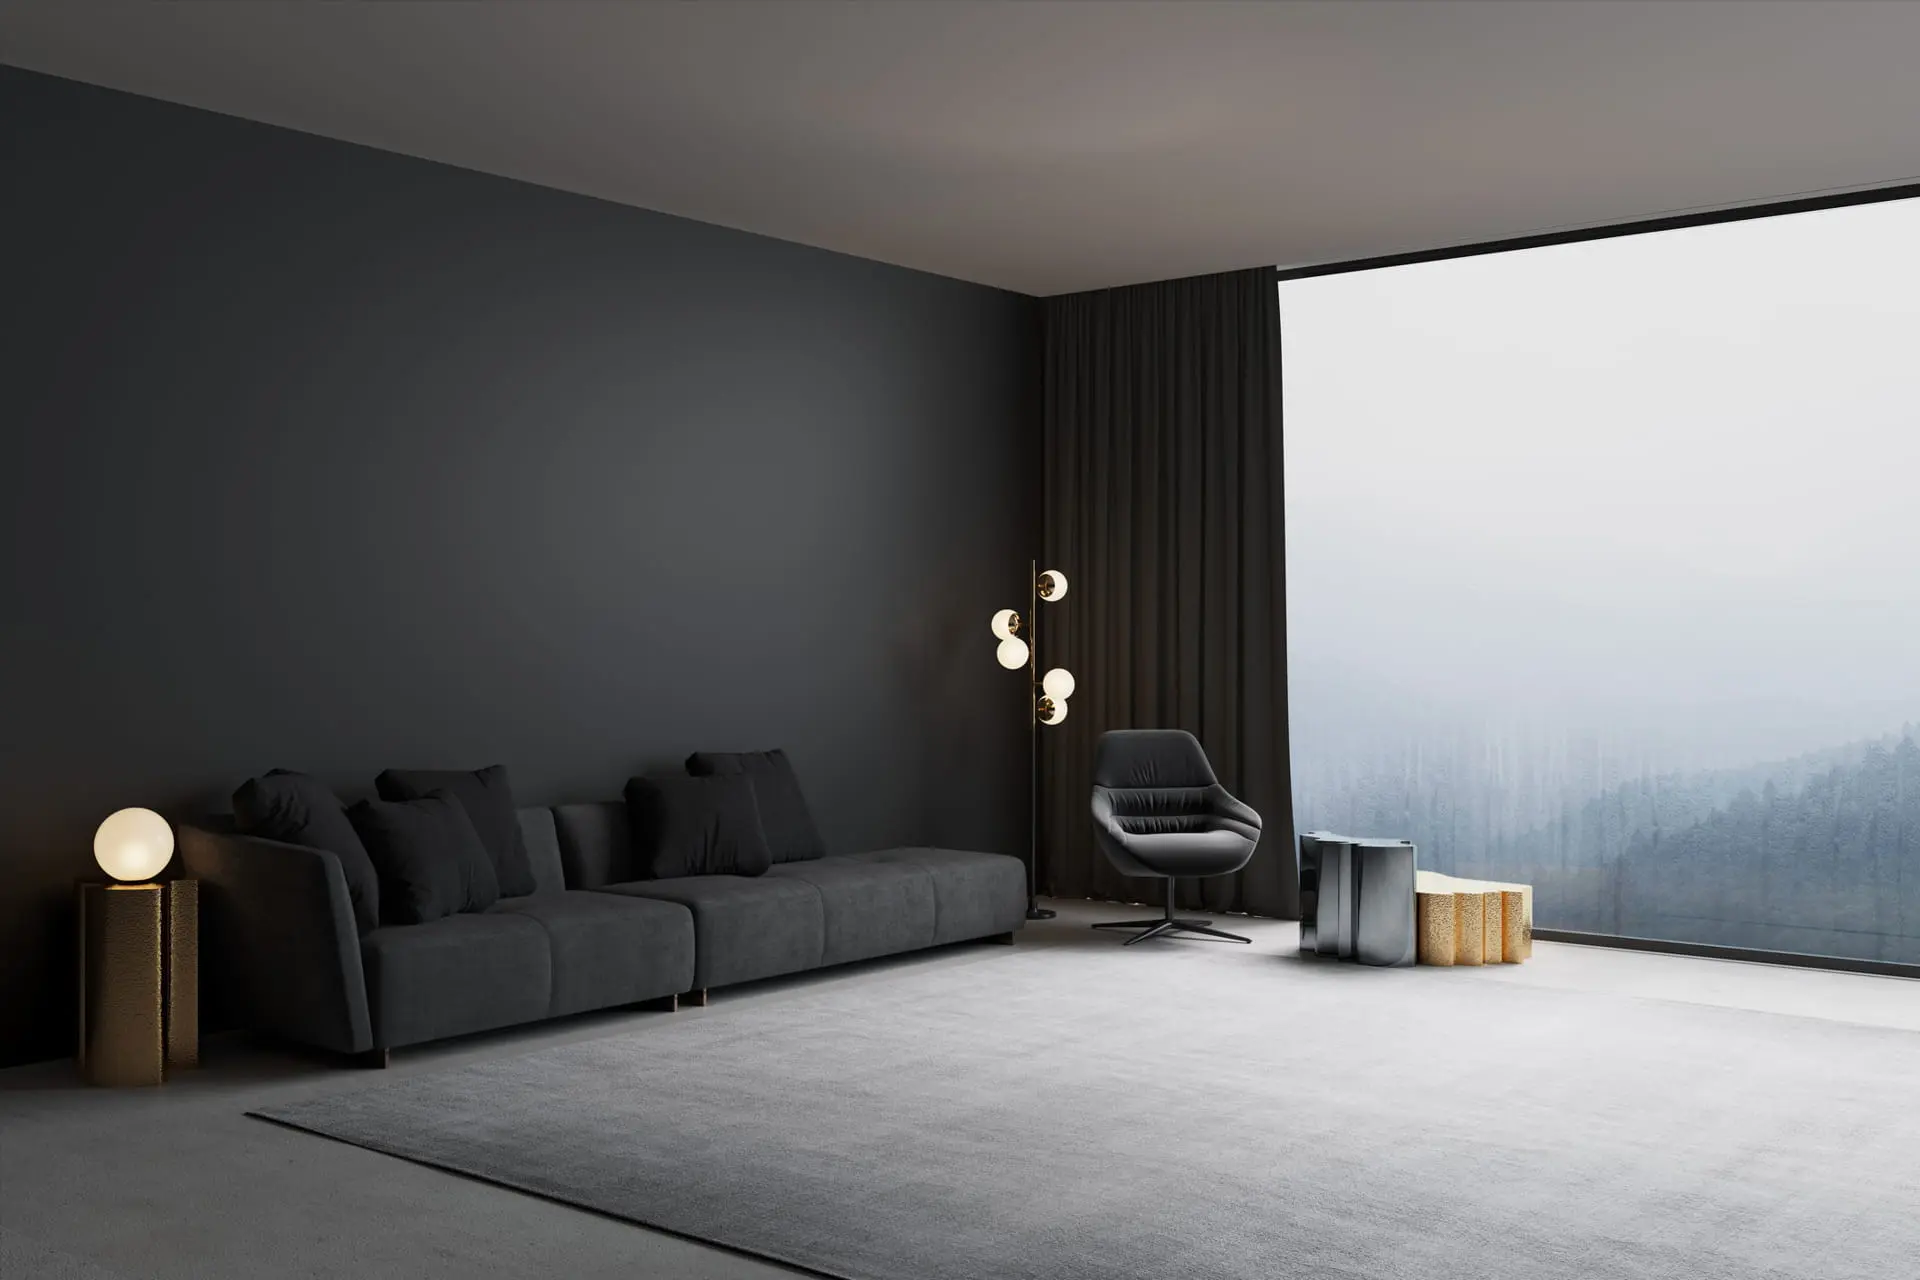 Moderne stue dekorert med mikrosement i mørk farge